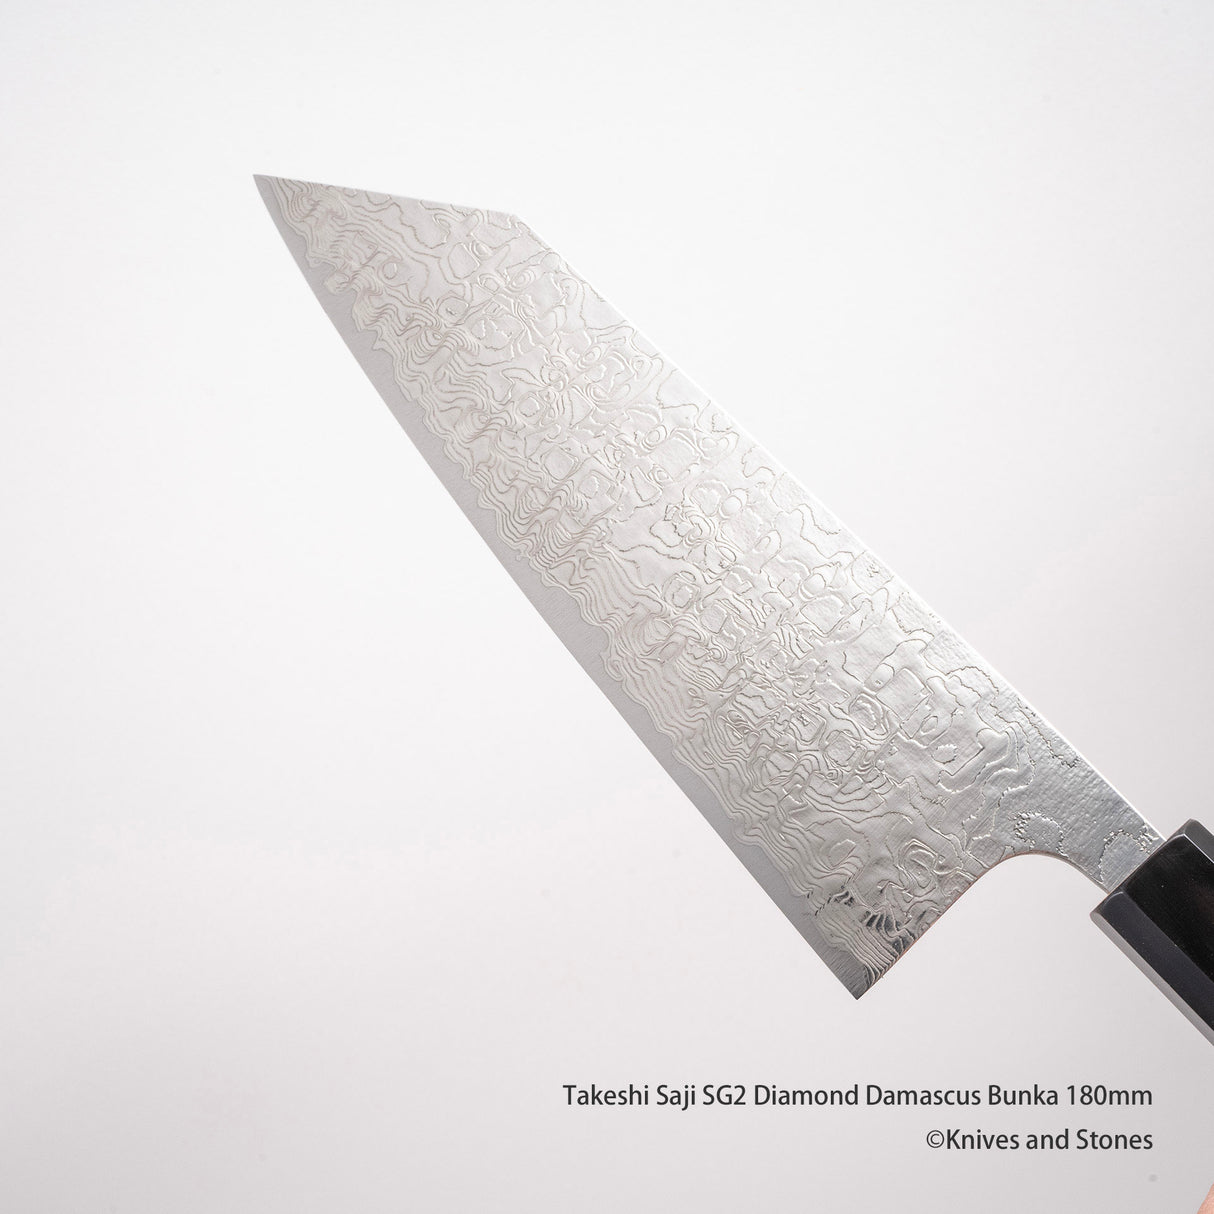 Takeshi Saji SG2 Diamond Damascus Bunka 180mm